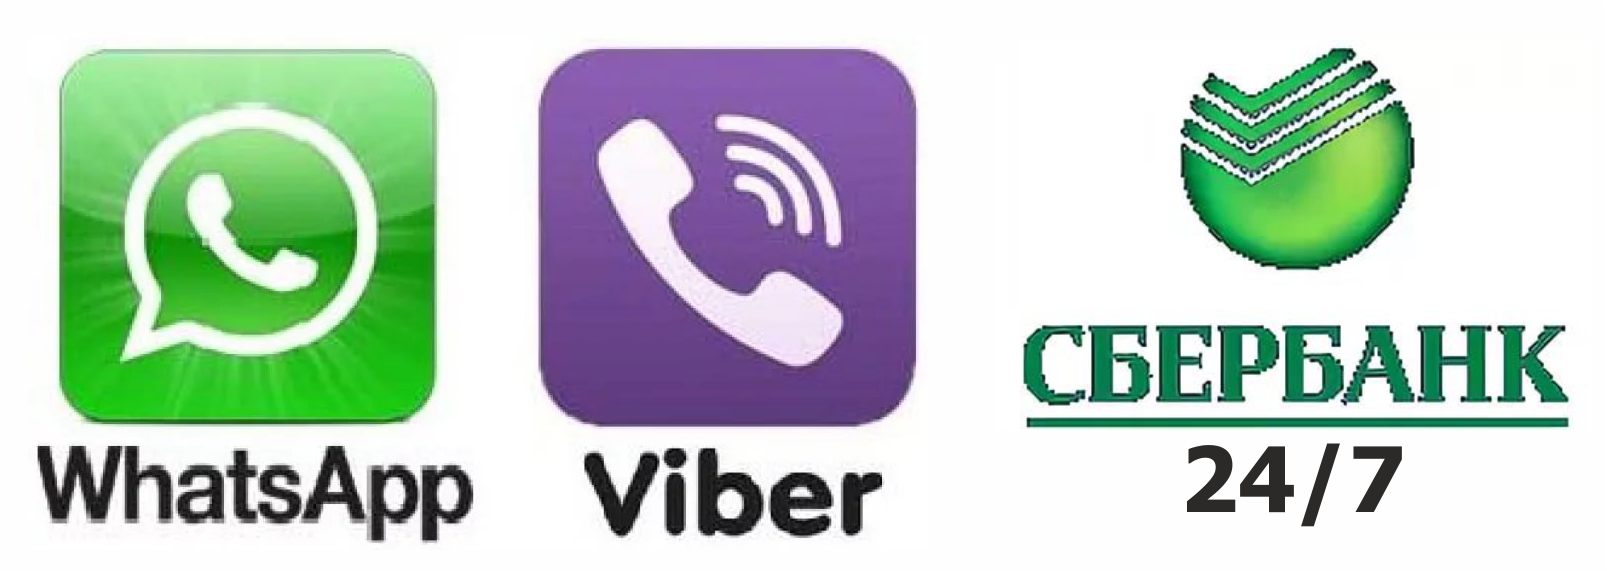 Передавати показання через пристрої Ощадбанку і за допомогою мобільних додатків Viber і WhatApp необхідно також же в установлені строки з 18 по 23 число кожного місяця